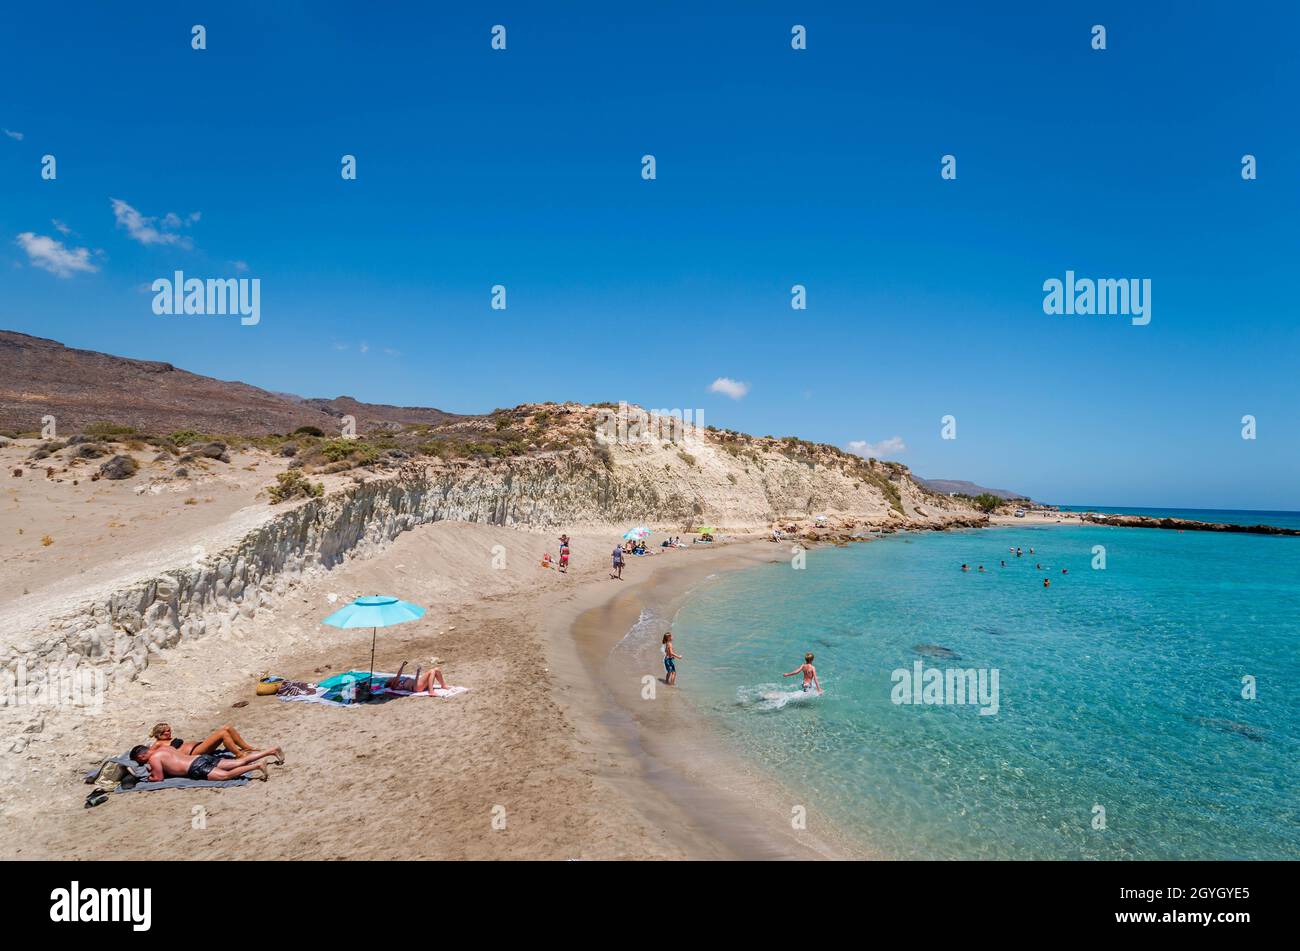 Der wunderschöne kretische Strand mit klarem und türkisfarbenem Wasser und dem weißen Lehm, der den Strand zu einem natürlichen Spa macht. Stockfoto